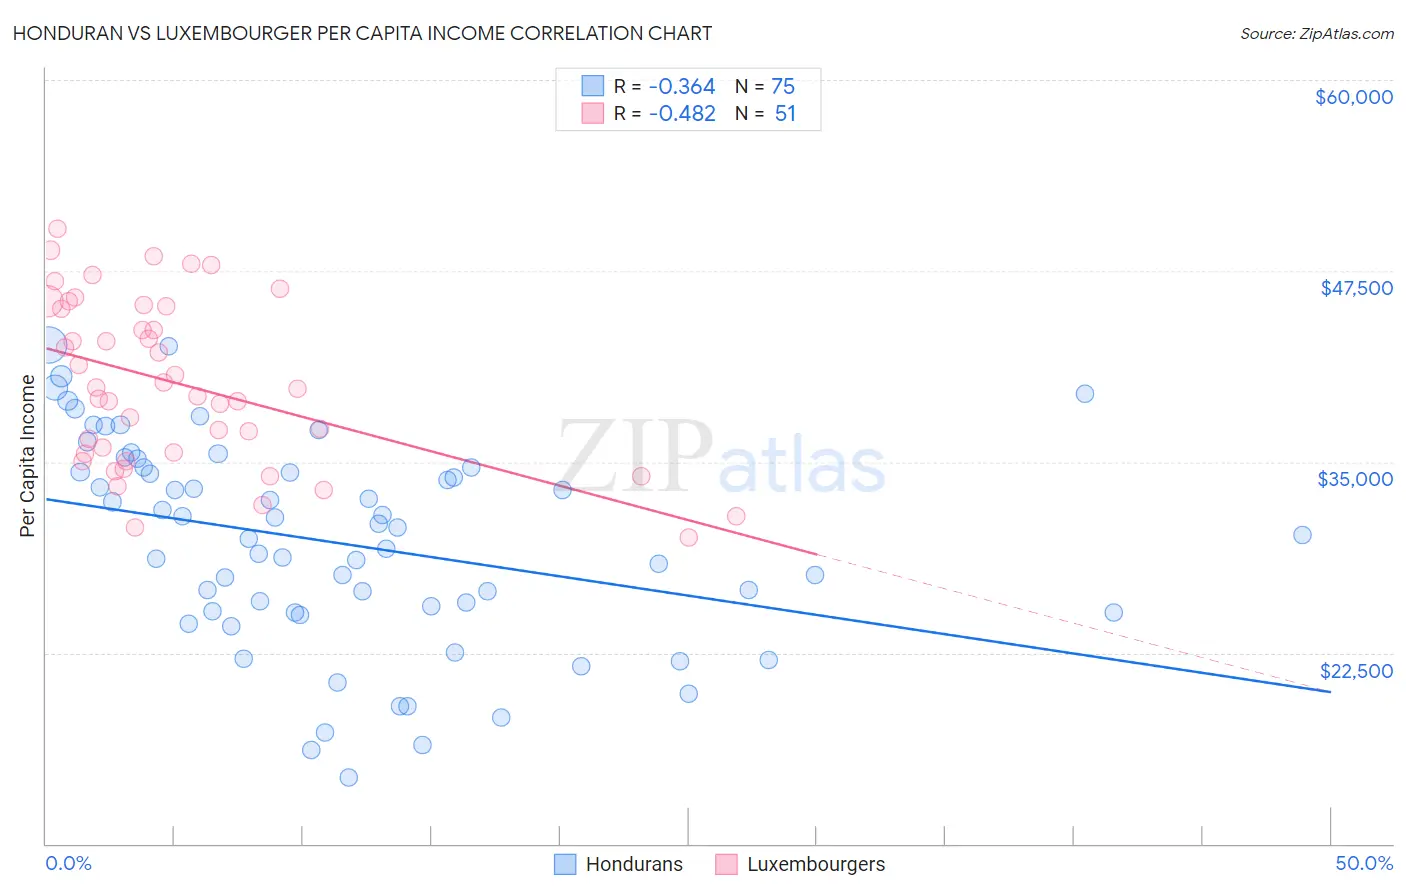 Honduran vs Luxembourger Per Capita Income